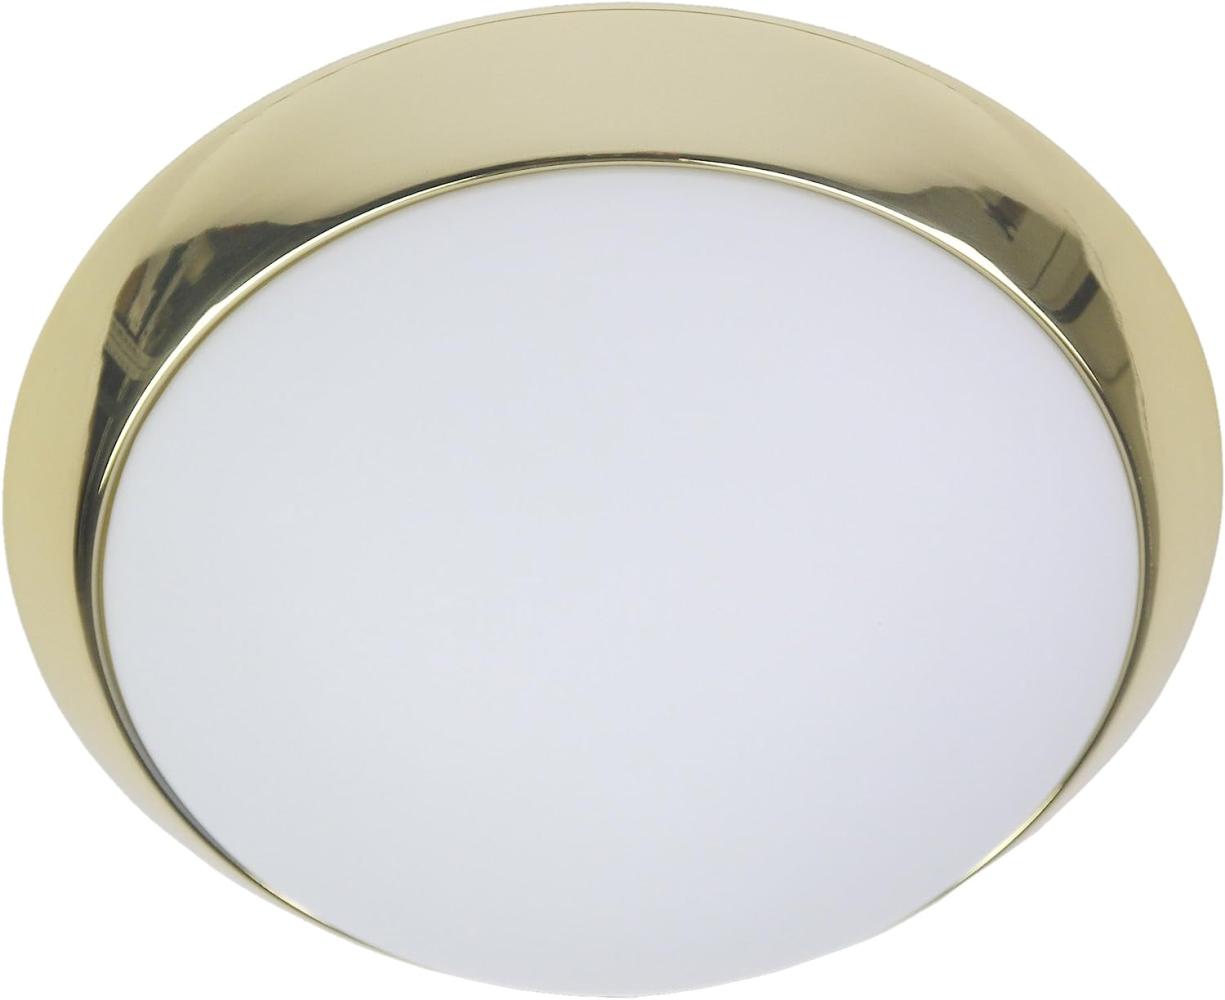 LED-Deckenleuchte rund, Opalglas matt, Dekorring Messing poliert, Ø 25cm Bild 1